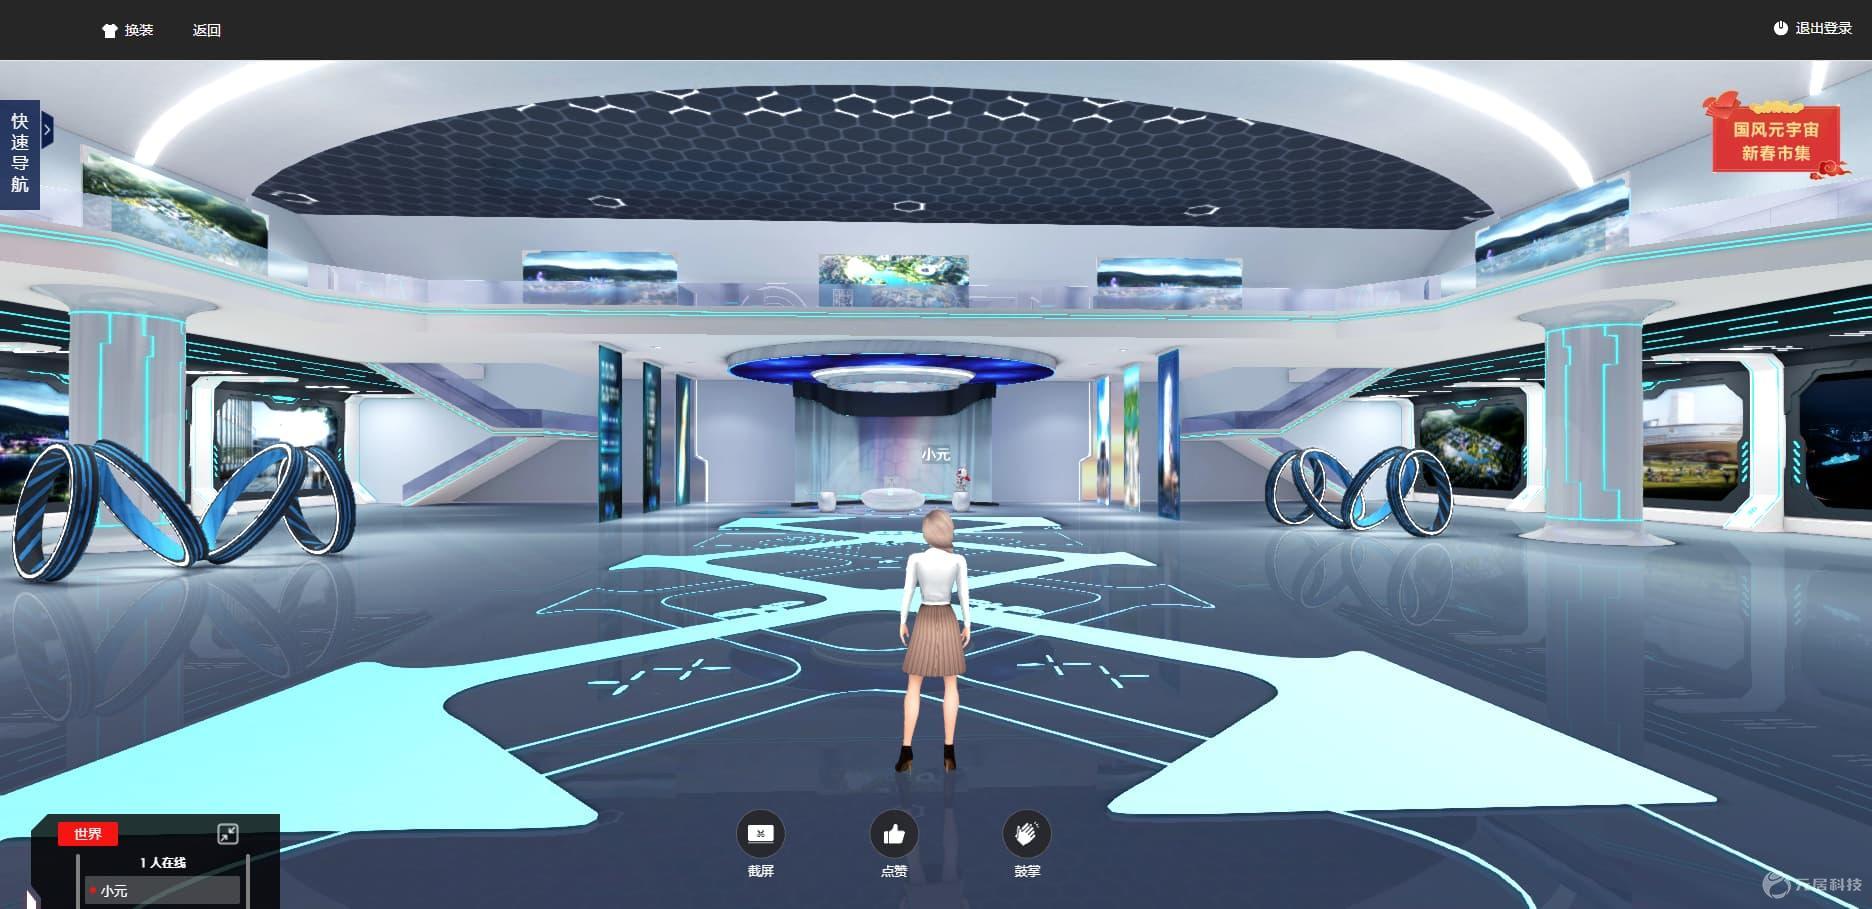 3D展厅的特点-展览展厅3d模型效果